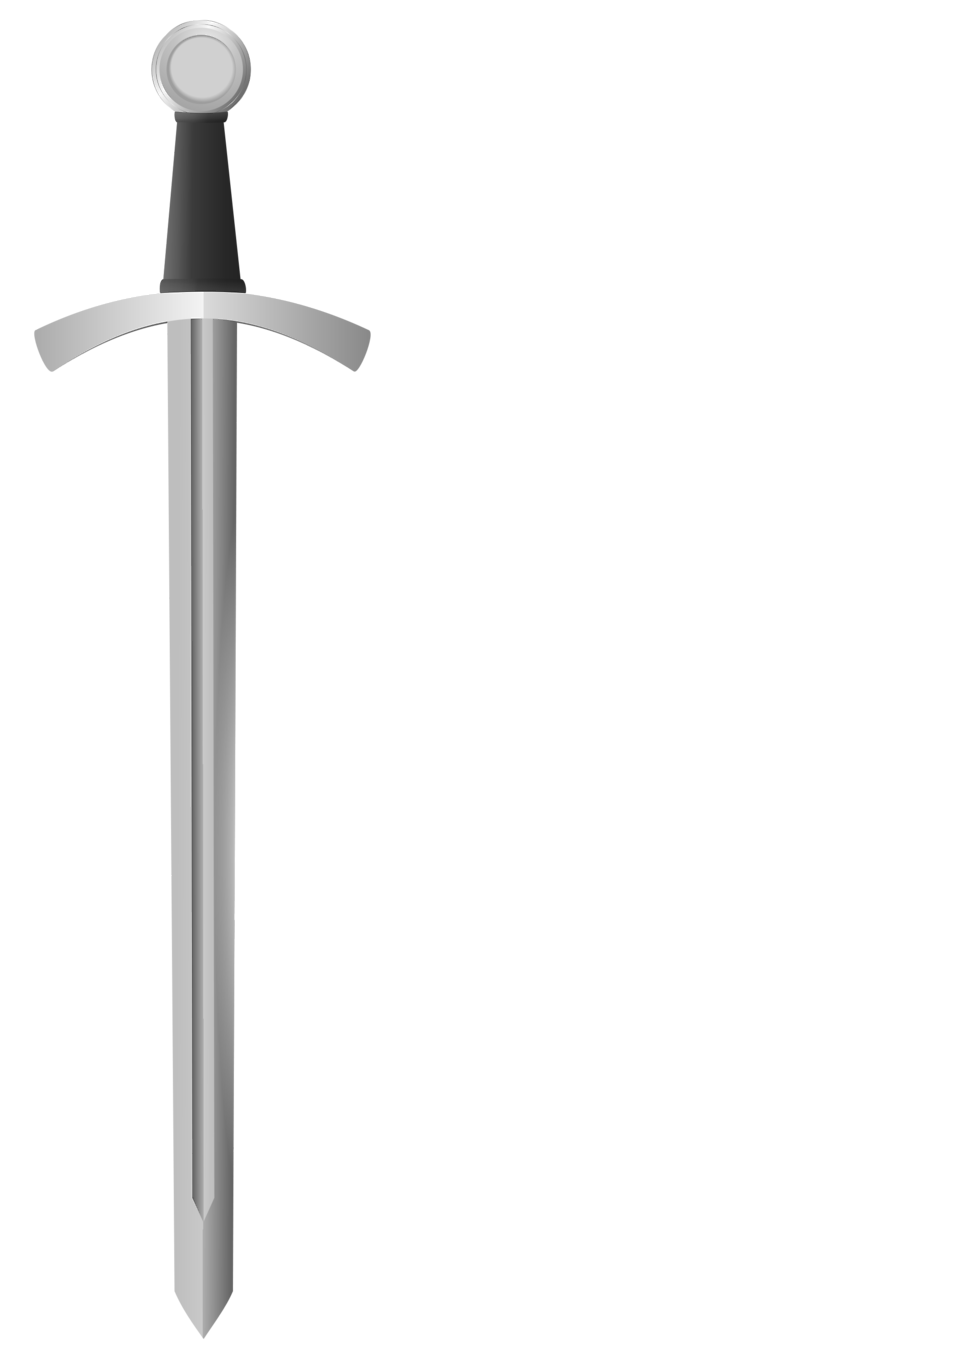 sword clipart ninja sword